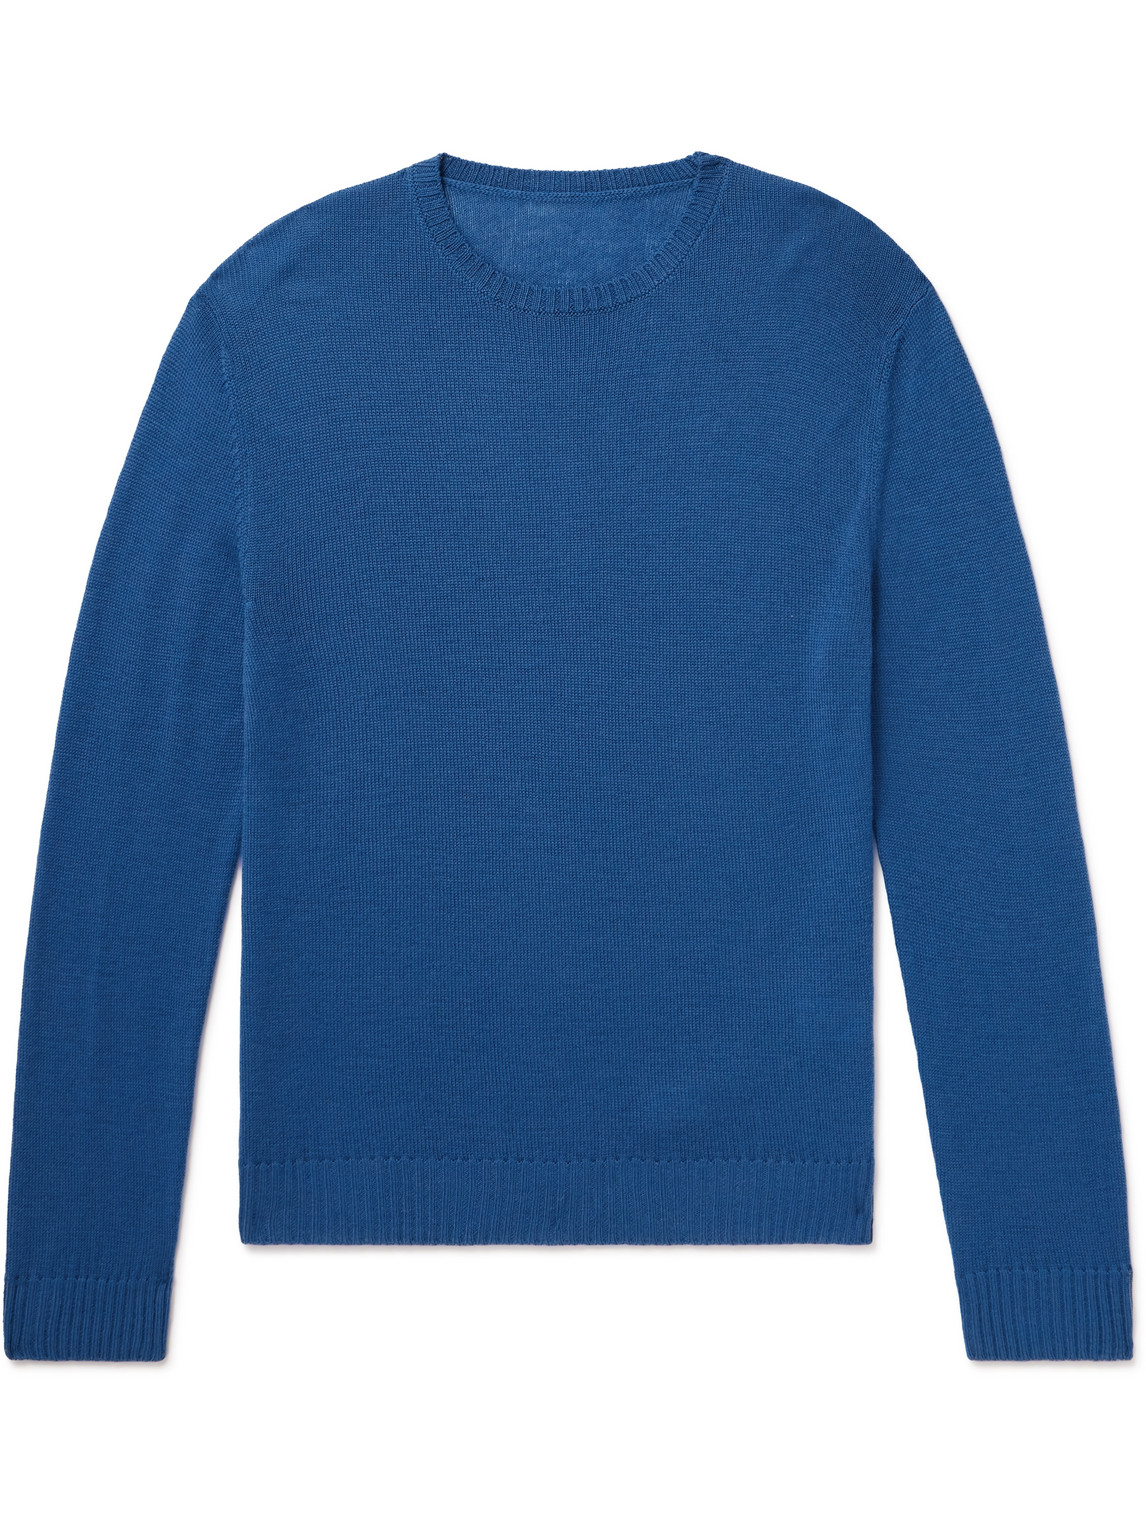 Anderson & Sheppard Merino Wool Sweater In Blue